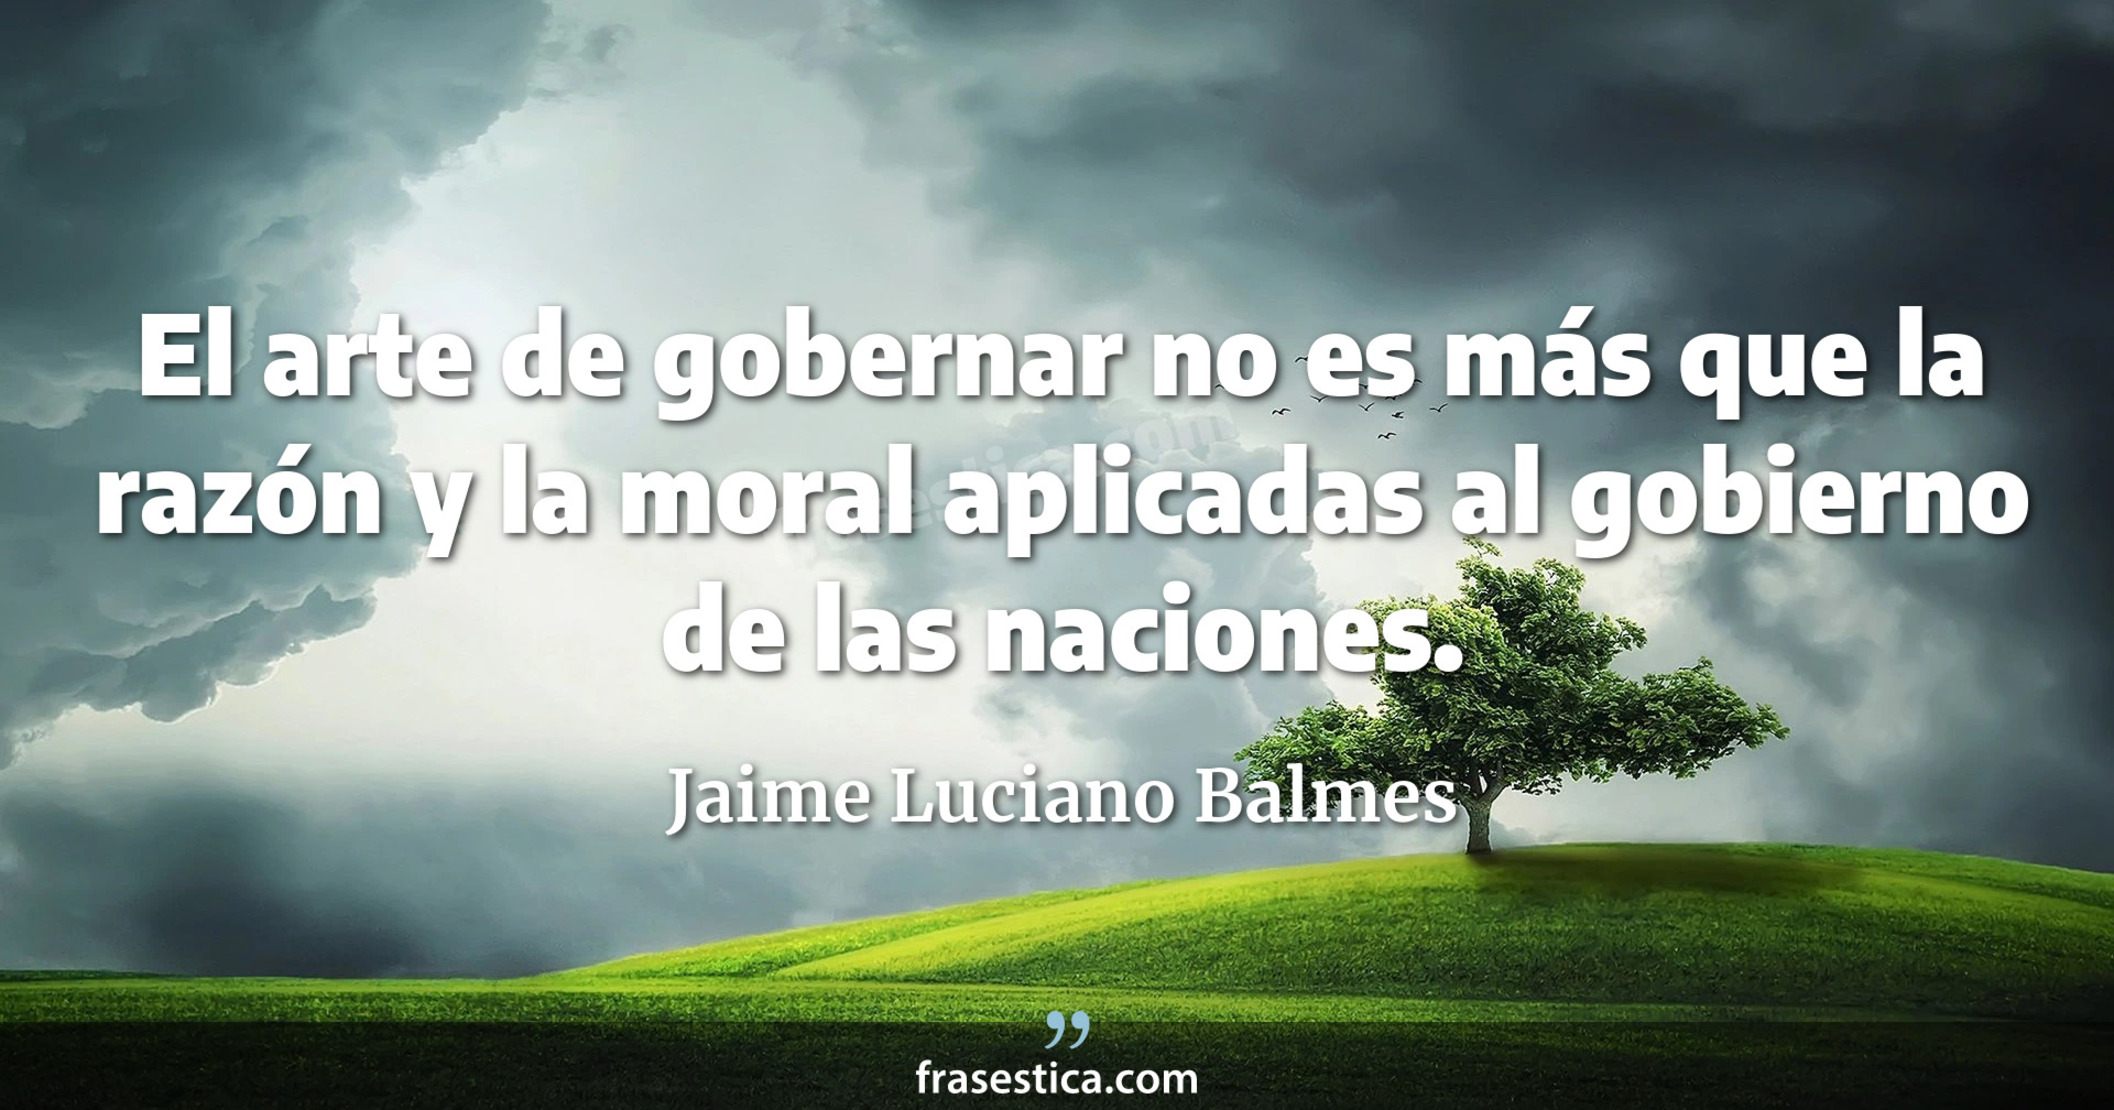 El arte de gobernar no es más que la razón y la moral aplicadas al gobierno de las naciones. - Jaime Luciano Balmes